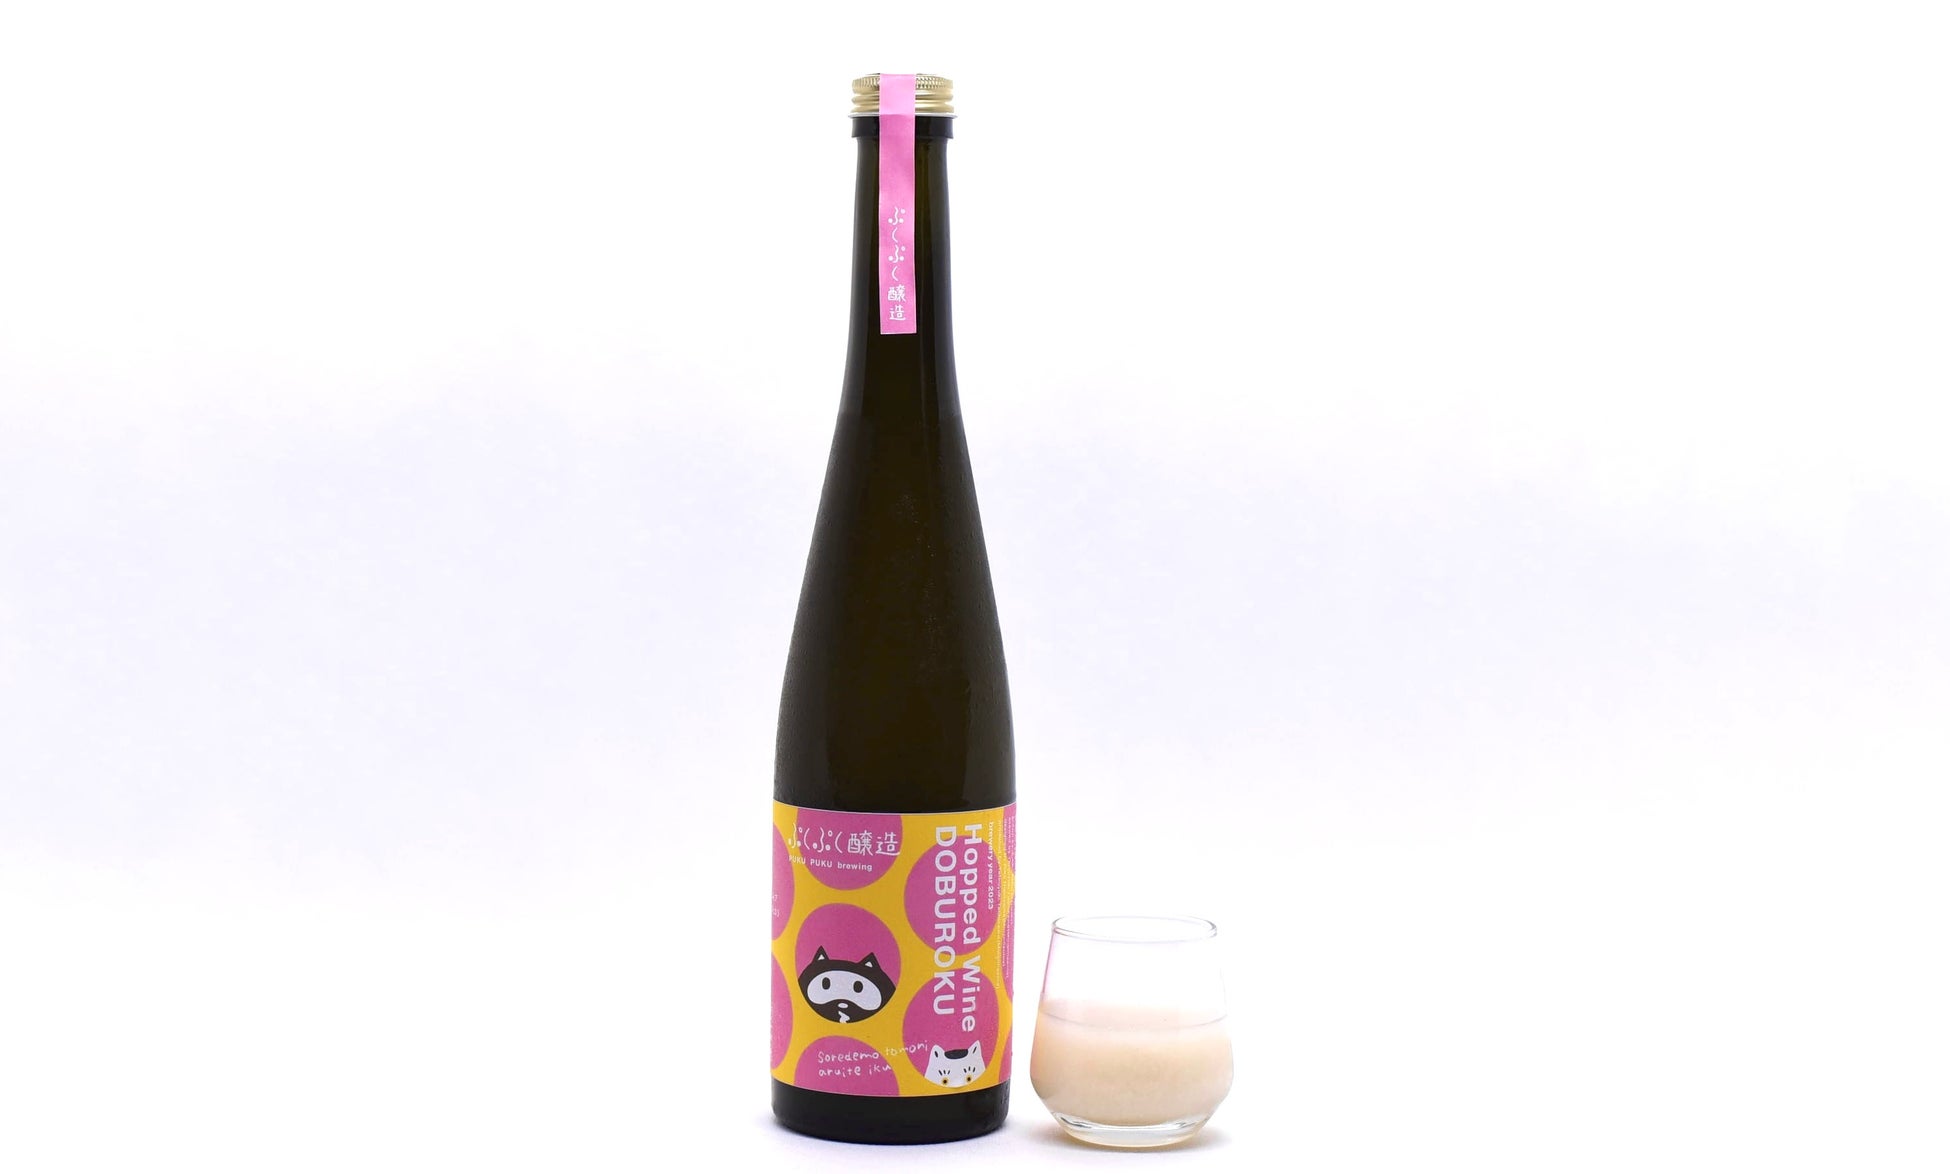 【ココ・ファーム・ワイナリー×ぷくぷく醸造】赤ワインの搾りかすを お米と一緒に発酵させた”ホップワインどぶろく”(Hopped Wine DOBUROKU)がリリース。